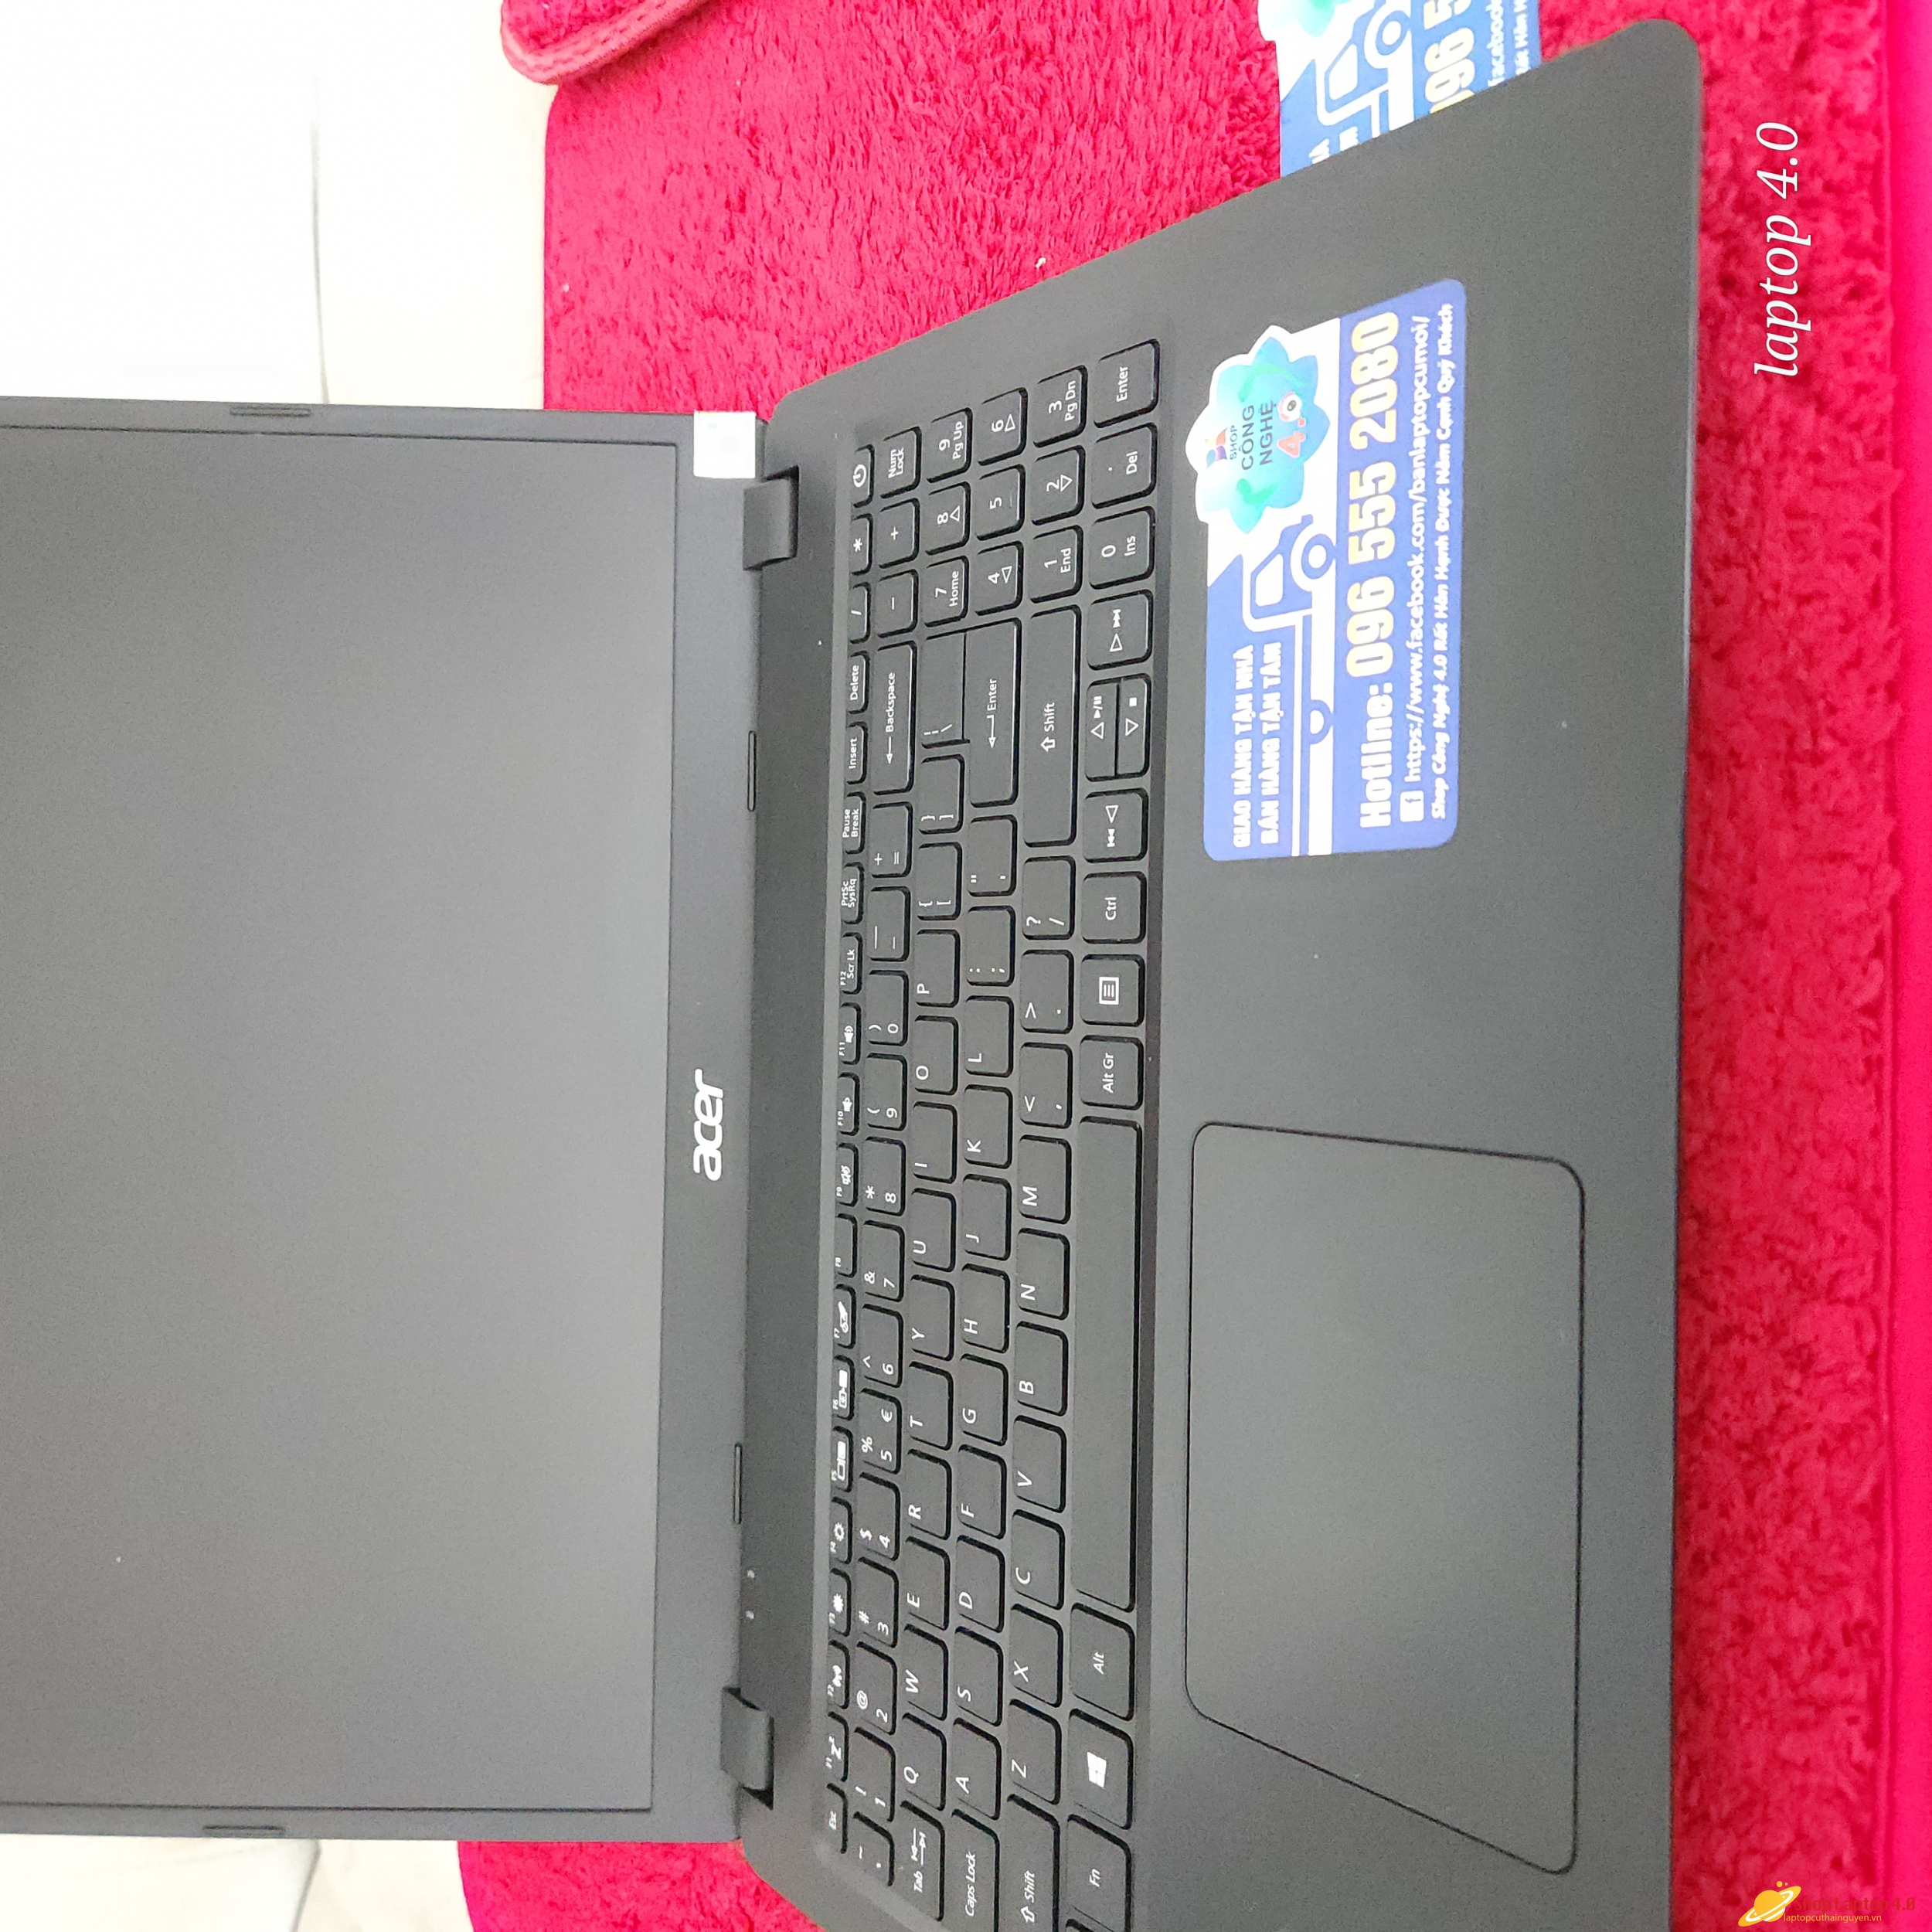 Laptop acer i5 1035g1 ram 8g ssd 256g 15.6 in full hd